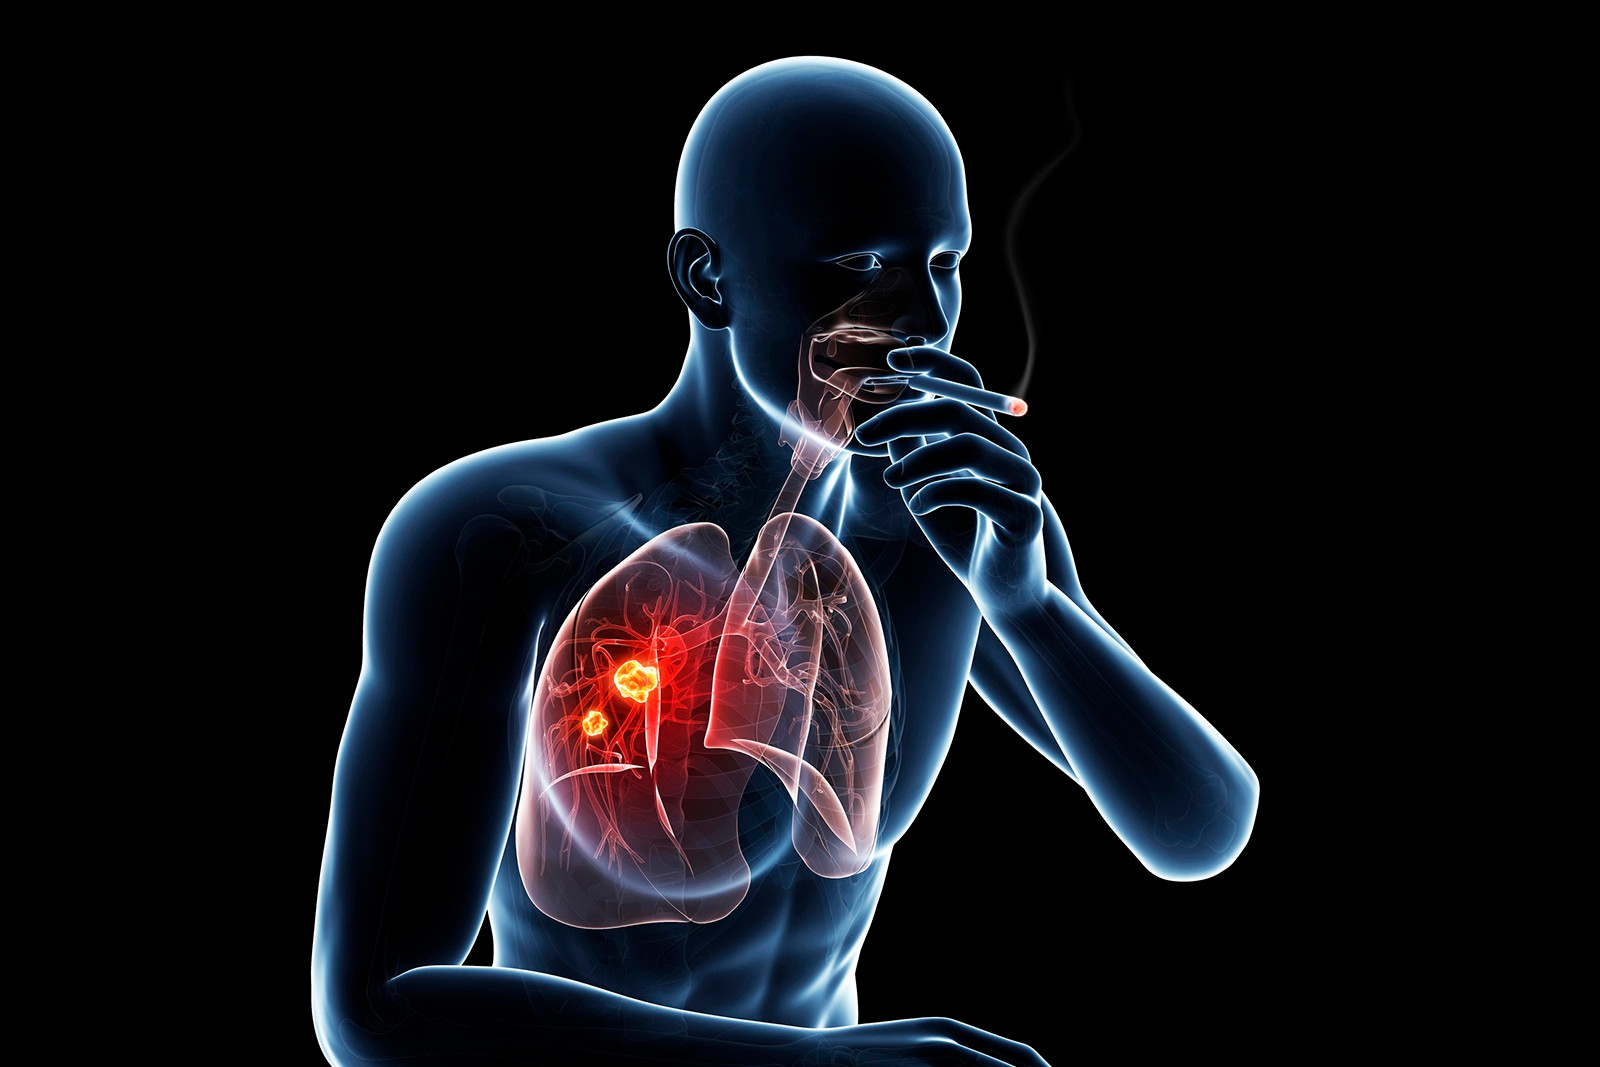 Ung thư phổi: Các tác dụng phụ hay gặp khi điều trị đích - 1